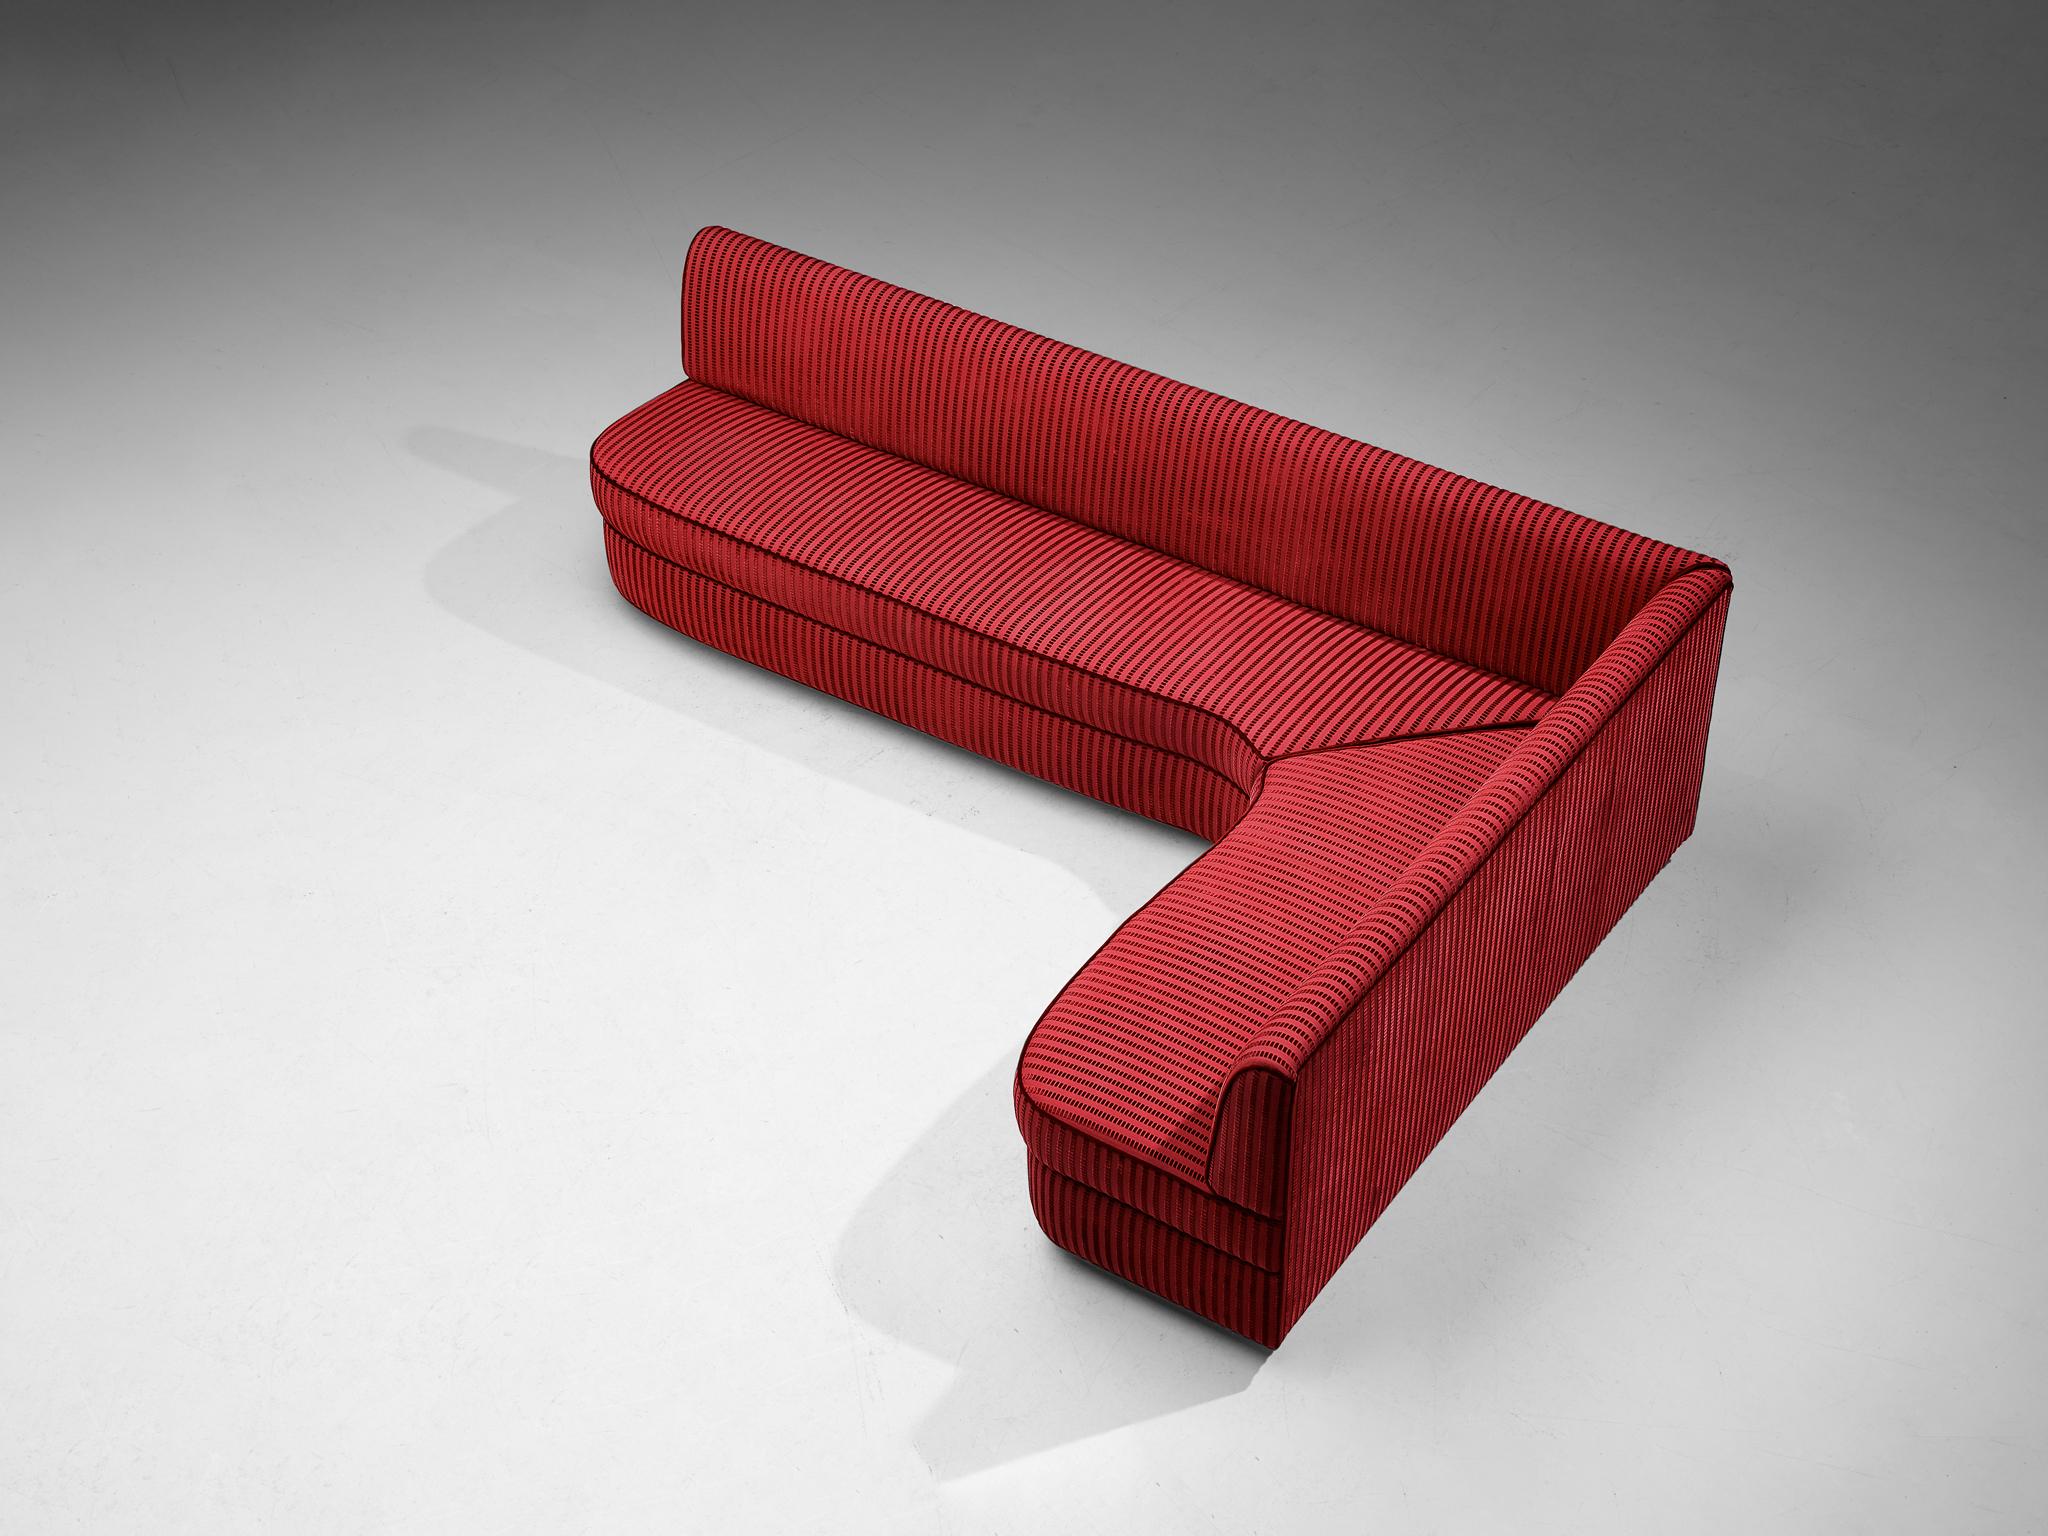 Ecksofa, Stoff, Samt, lackiertes Holz, Italien, 1950er Jahre

Dieses Sofa italienischer Herkunft hat eine gemütliche Ausstrahlung und zeichnet sich durch eine prächtige Konstruktion aus. Der Korpus ist mit einem roten Stoff gepolstert, der mit